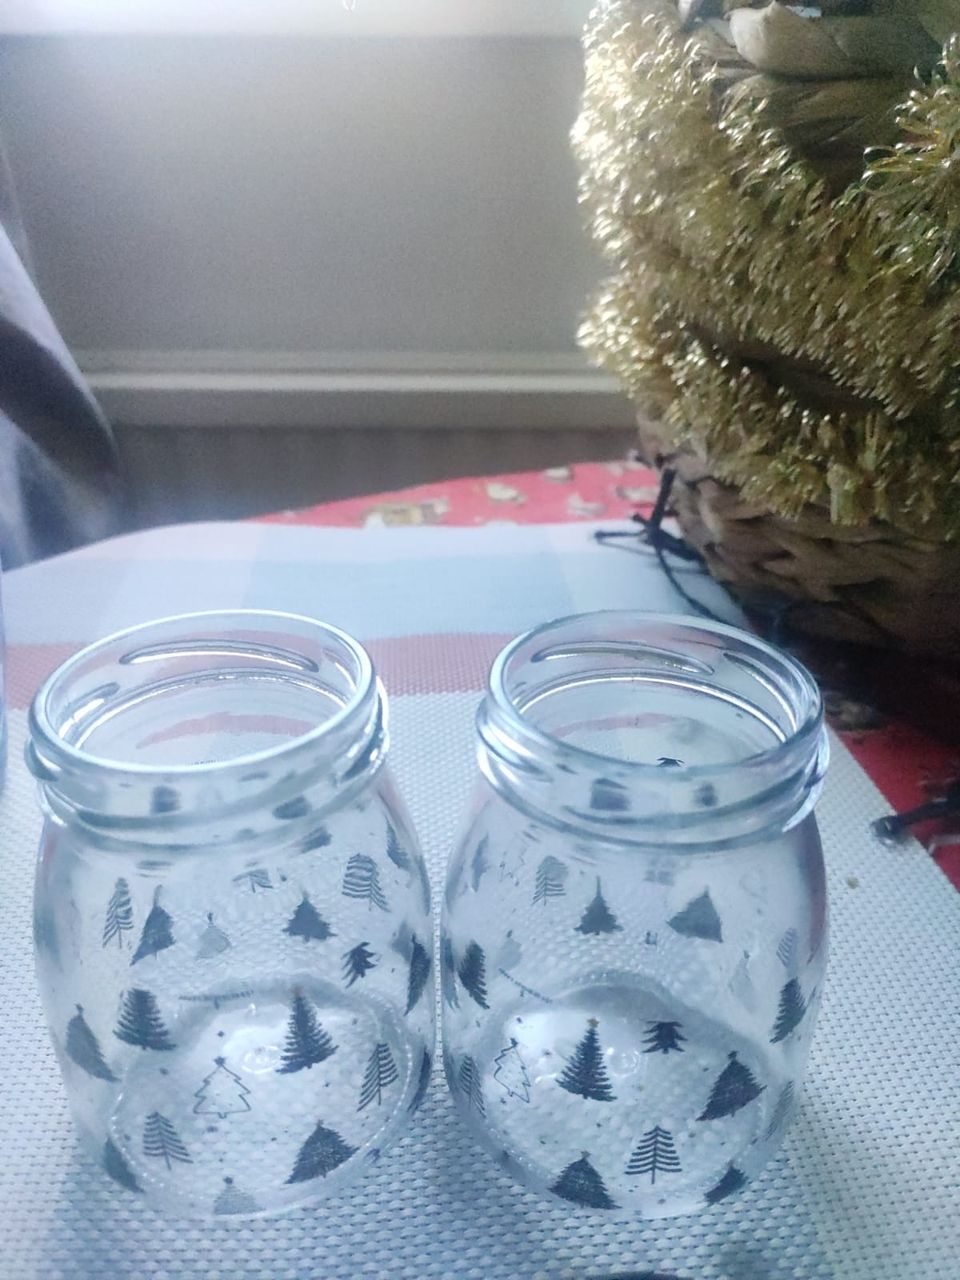 2 Small Glass jars